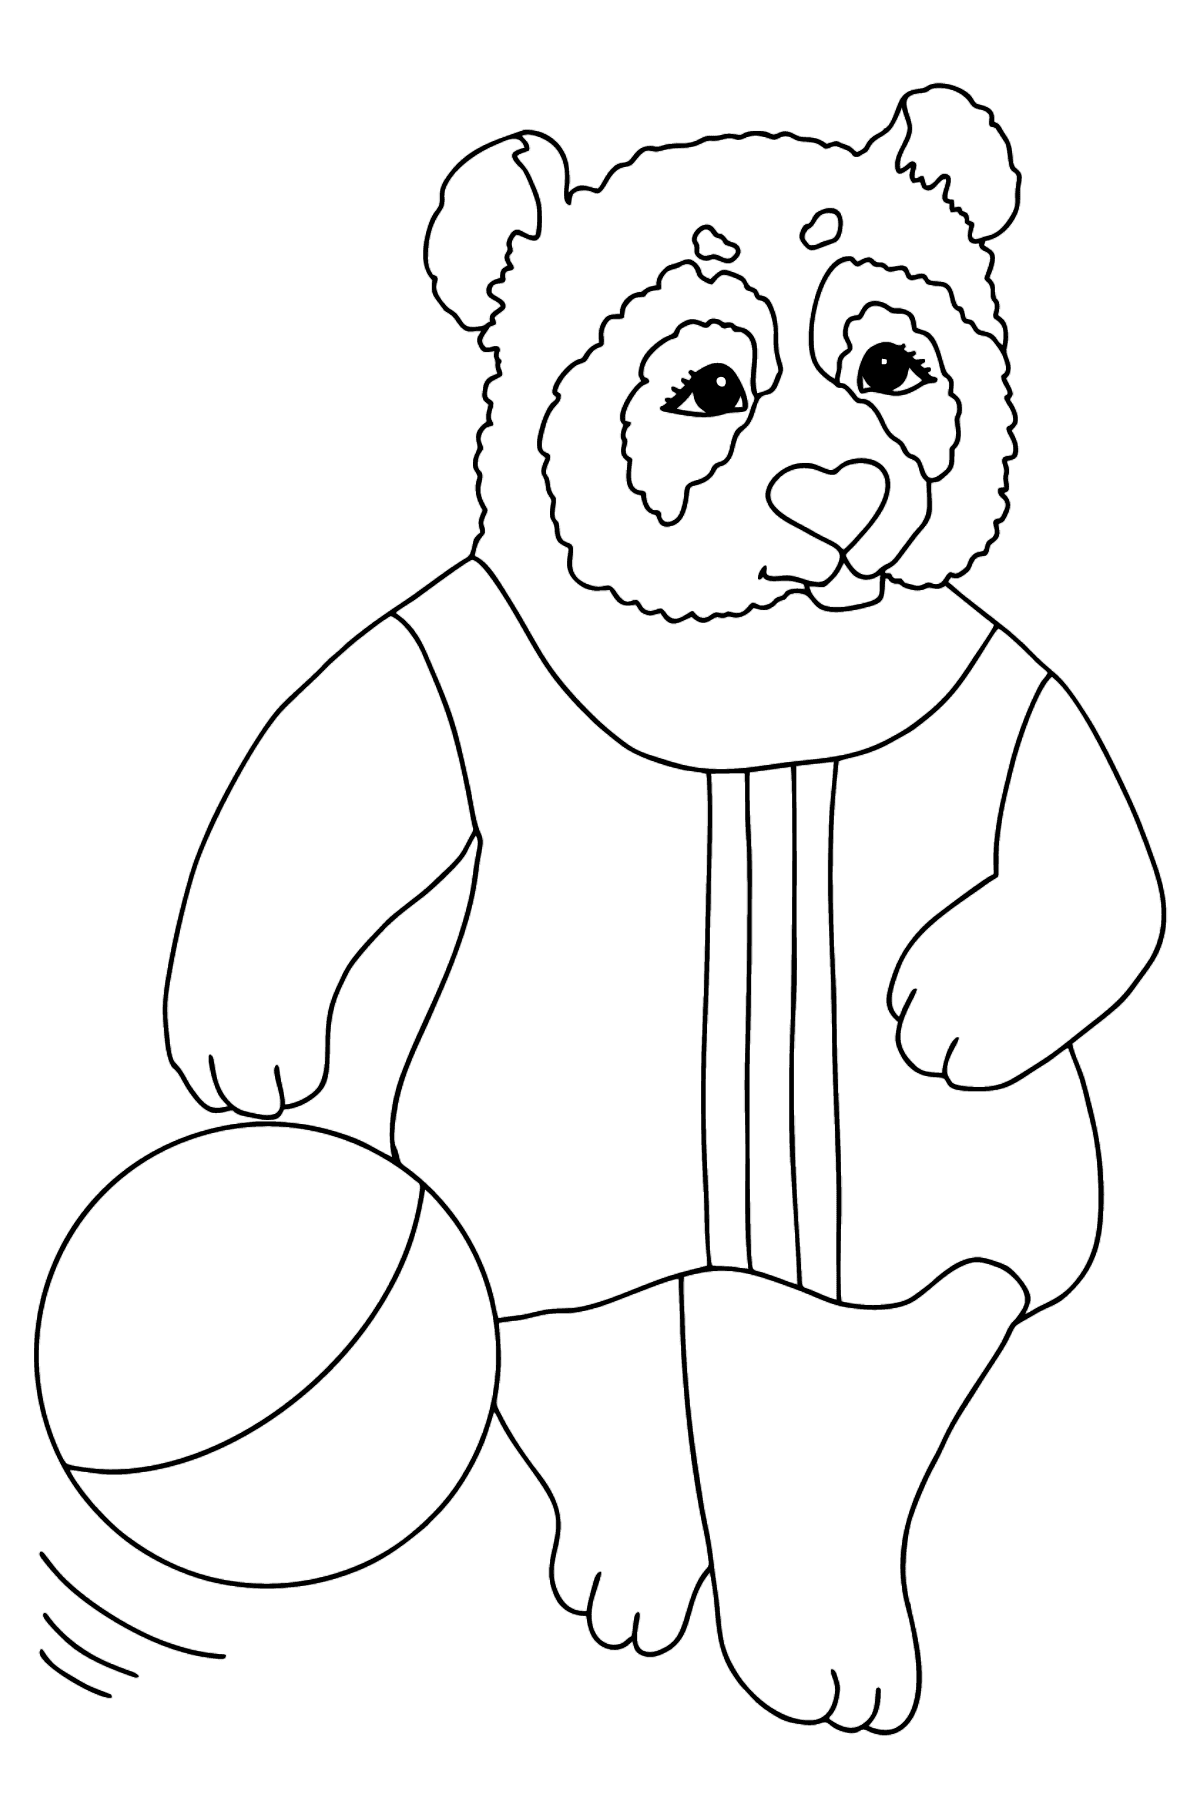 Desen de colorat panda pentru bebelusi (dificil) - Desene de colorat pentru copii